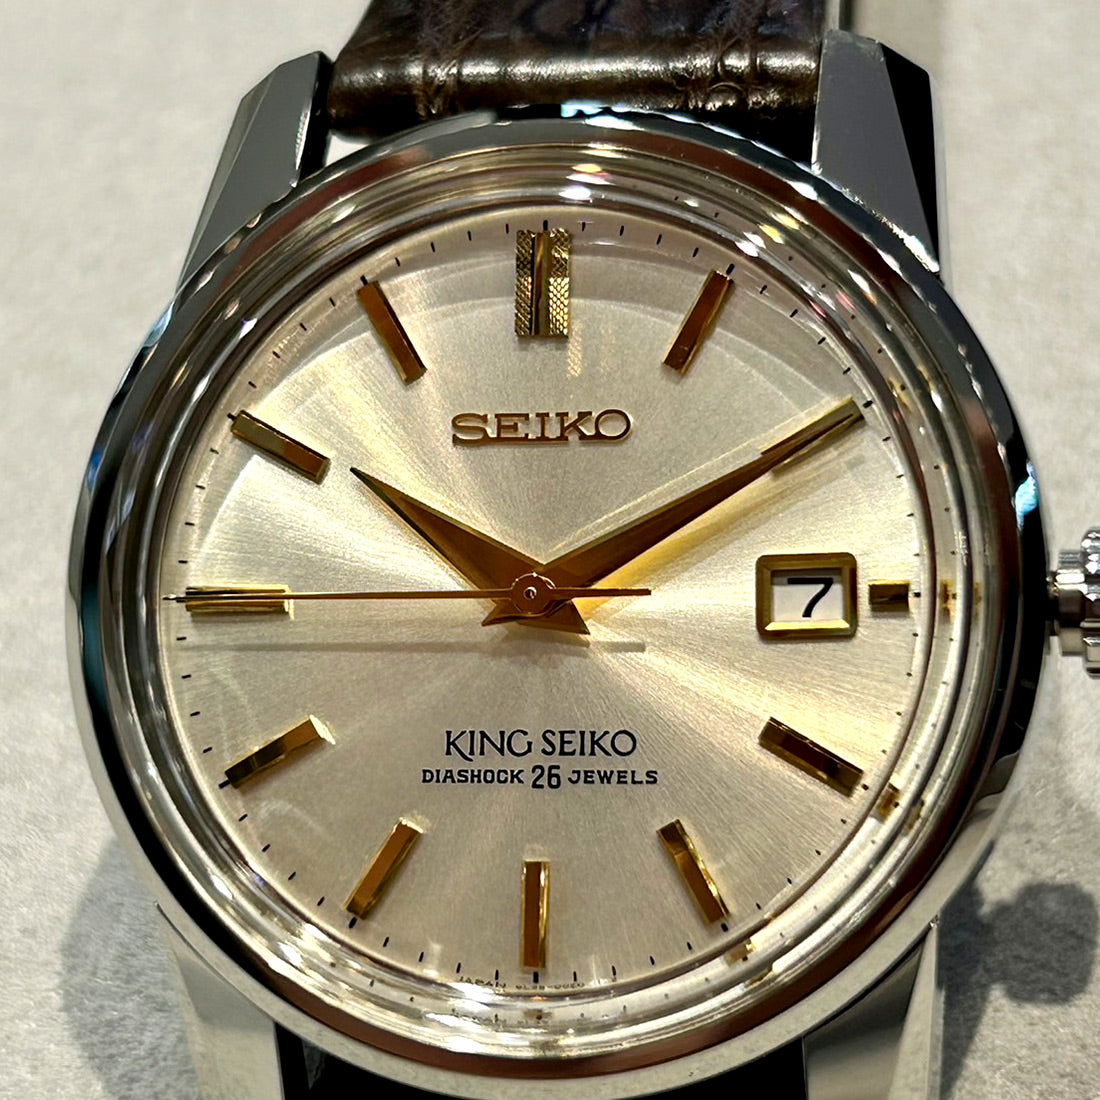 KING SEIKO King Seiko KSK Reprint Design Limited Model Limited Quantity SDKA003 Seiko Watch Salon Exclusive Model